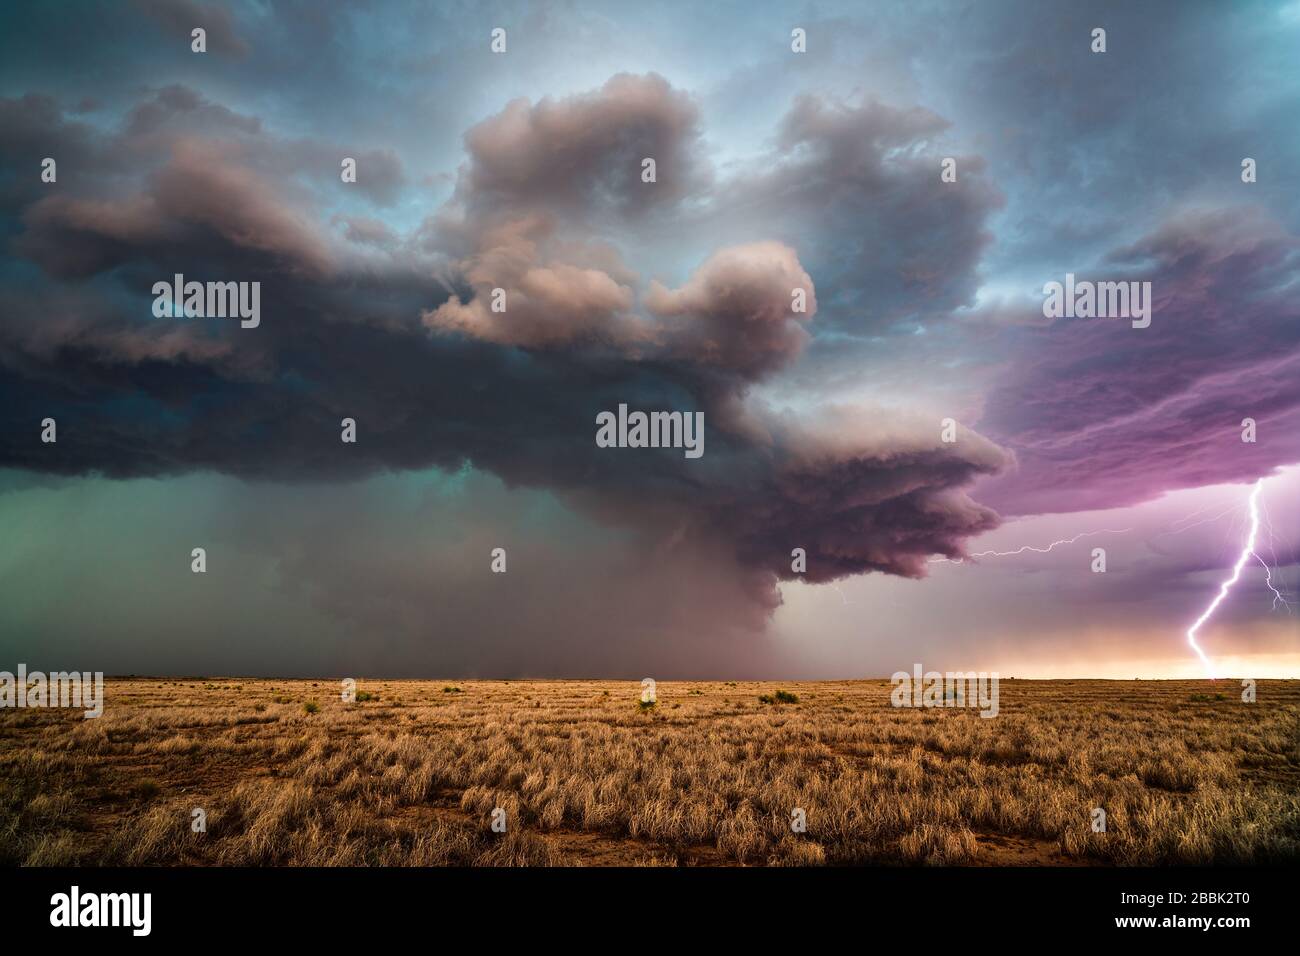 Éclair coup de boulon dans un orage supercellulaire avec des nuages spectaculaires près de Roswell, Nouveau-Mexique Banque D'Images